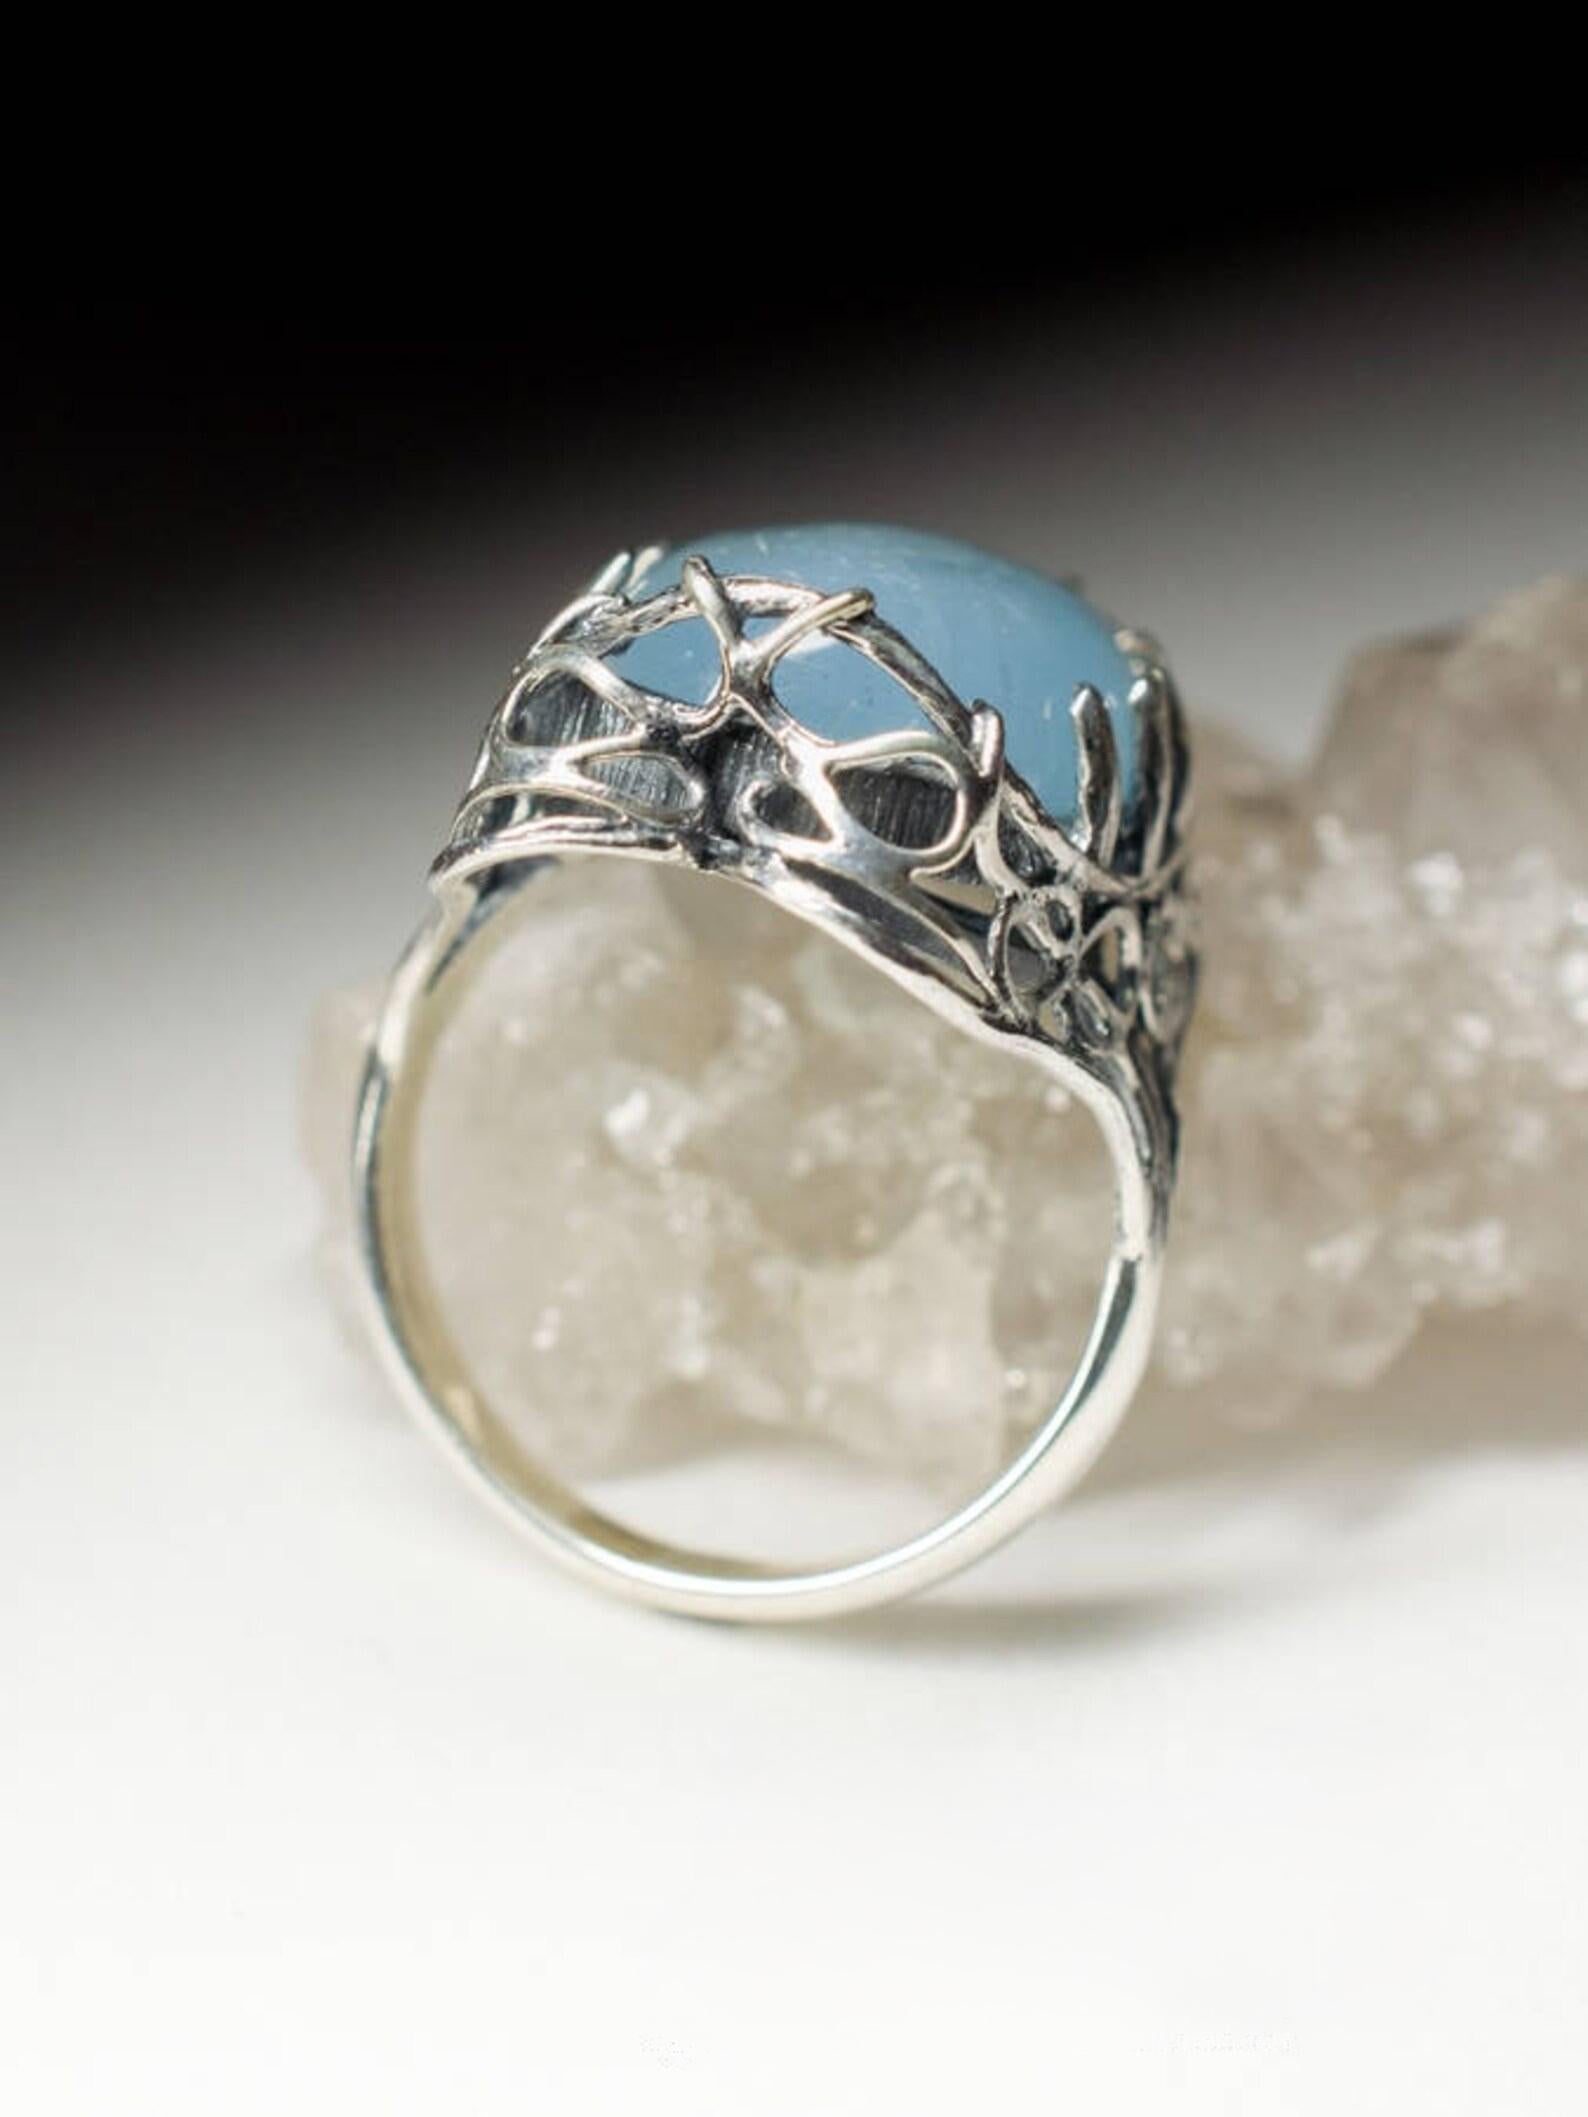 Aquamarine Ring Gothic style Light Blue Icy Beryl Cabochon Gemstone vintage 2